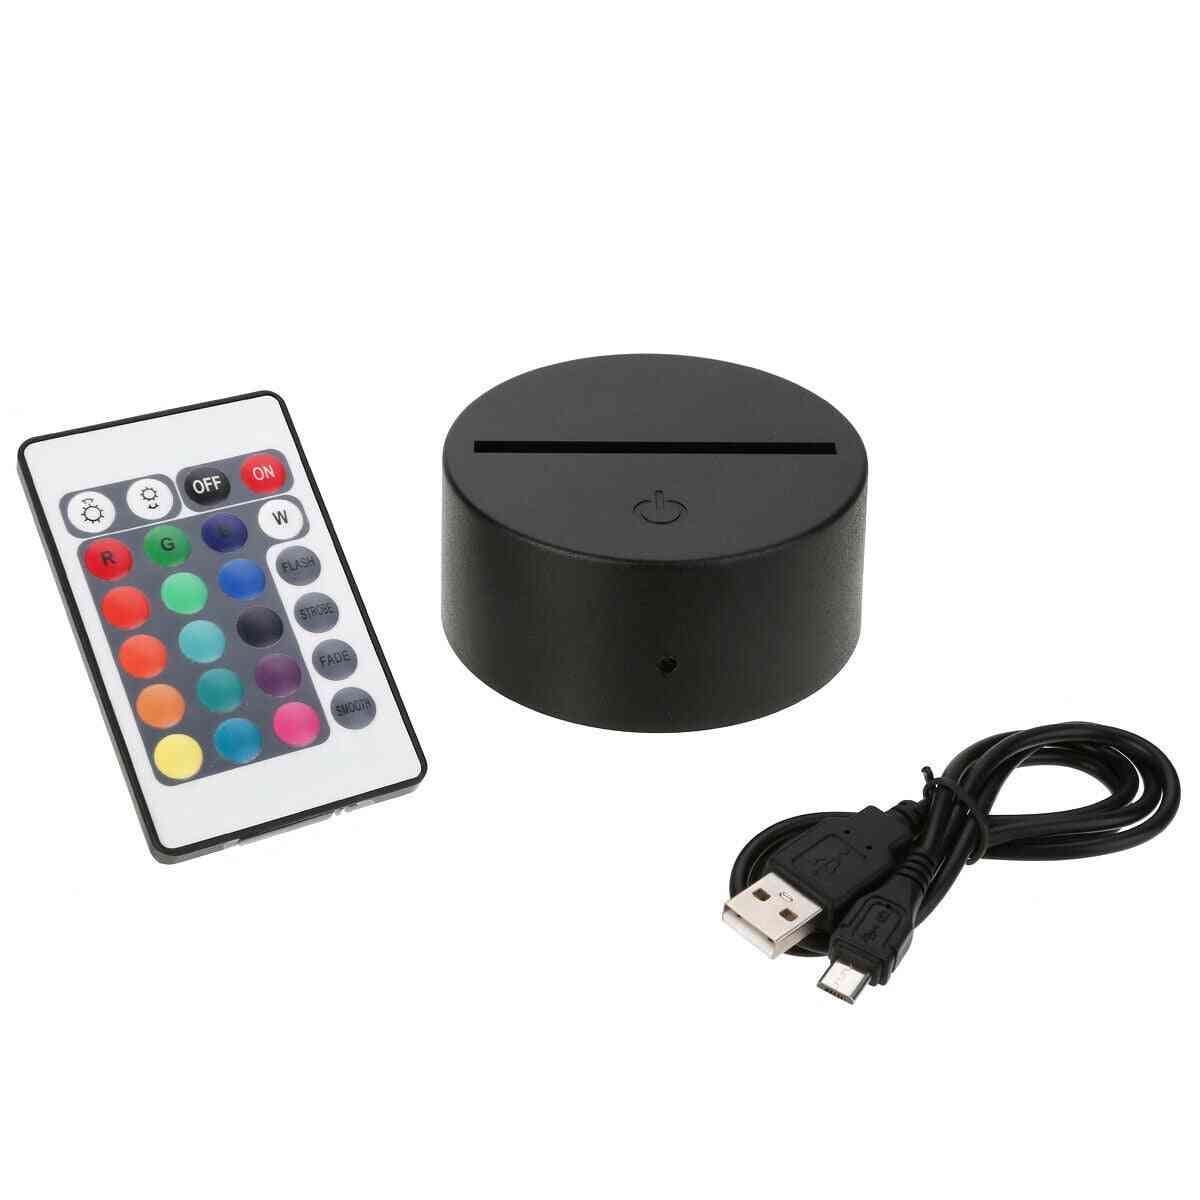 Suport pentru lampă cu lumină de noapte 3D cu LED negru cu adaptor de alimentare, cablu USB + telecomandă pentru cadou de ziua de Crăciun (bază pentru lampă)